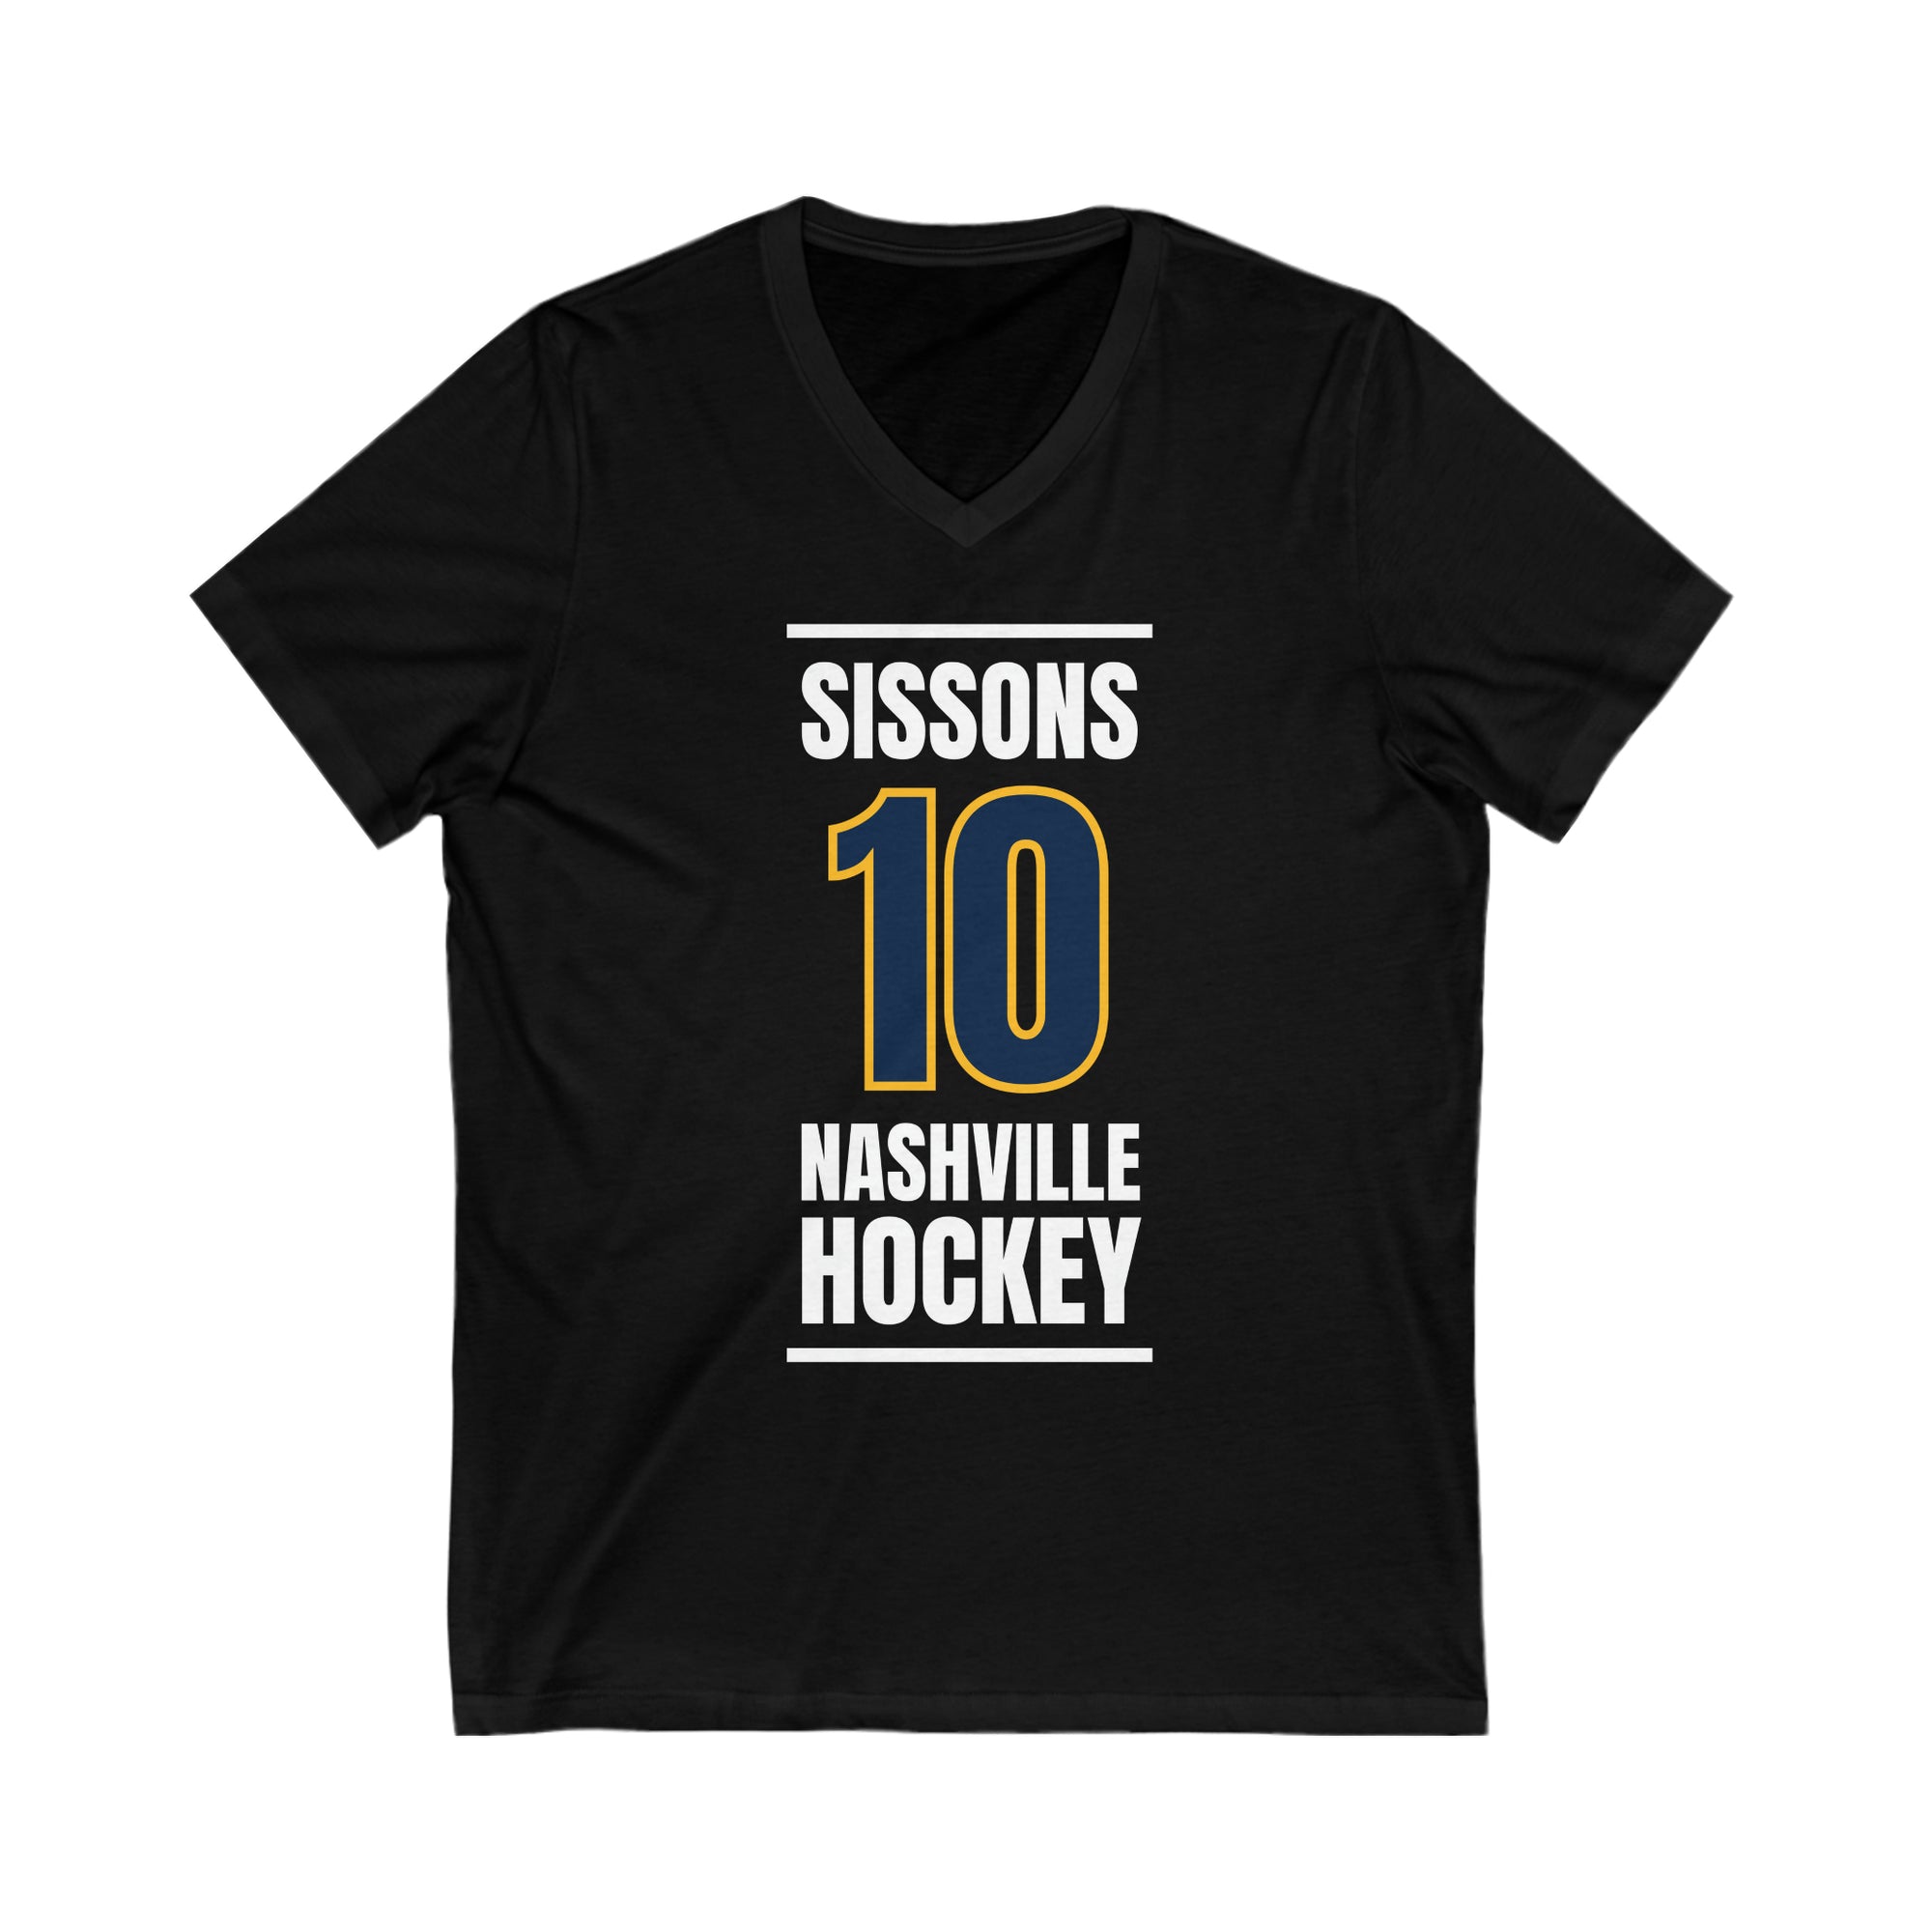 Sissons 10 Nashville Hockey Navy Blue Vertical Design Unisex V-Neck Tee